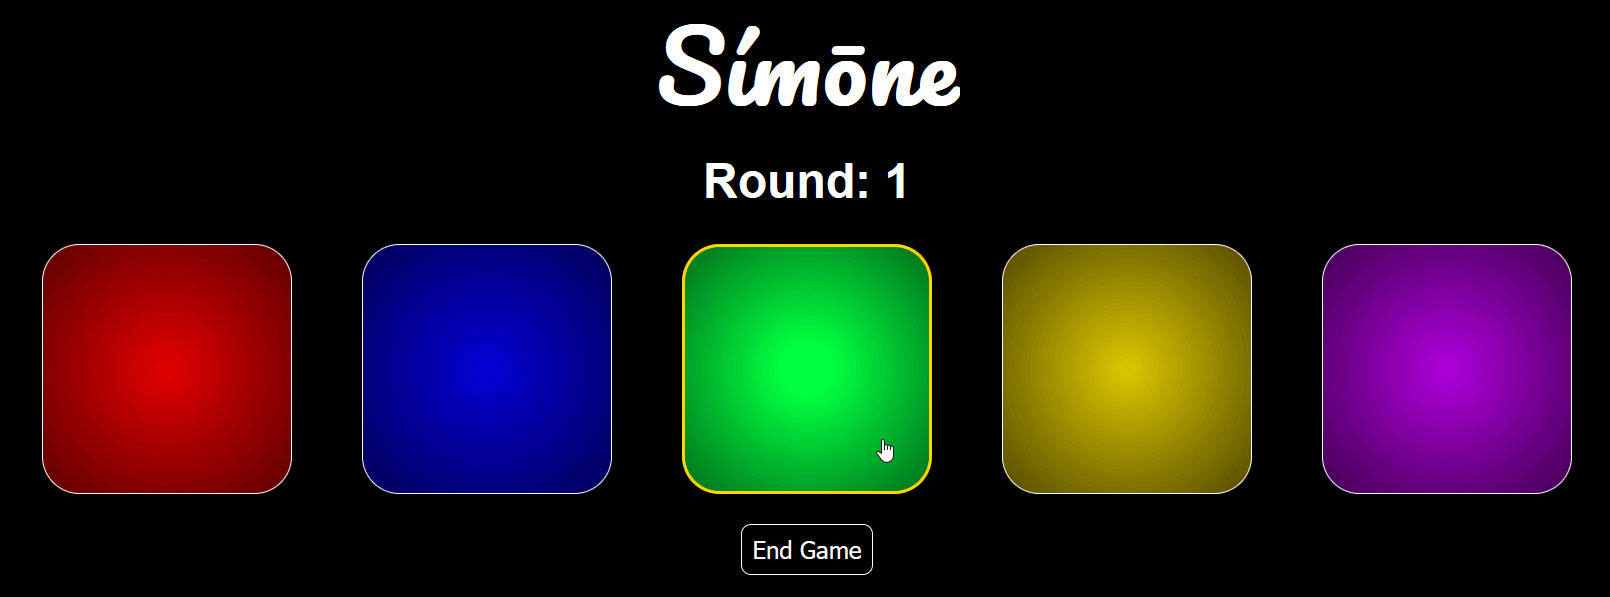 Arcade games simon screenshot